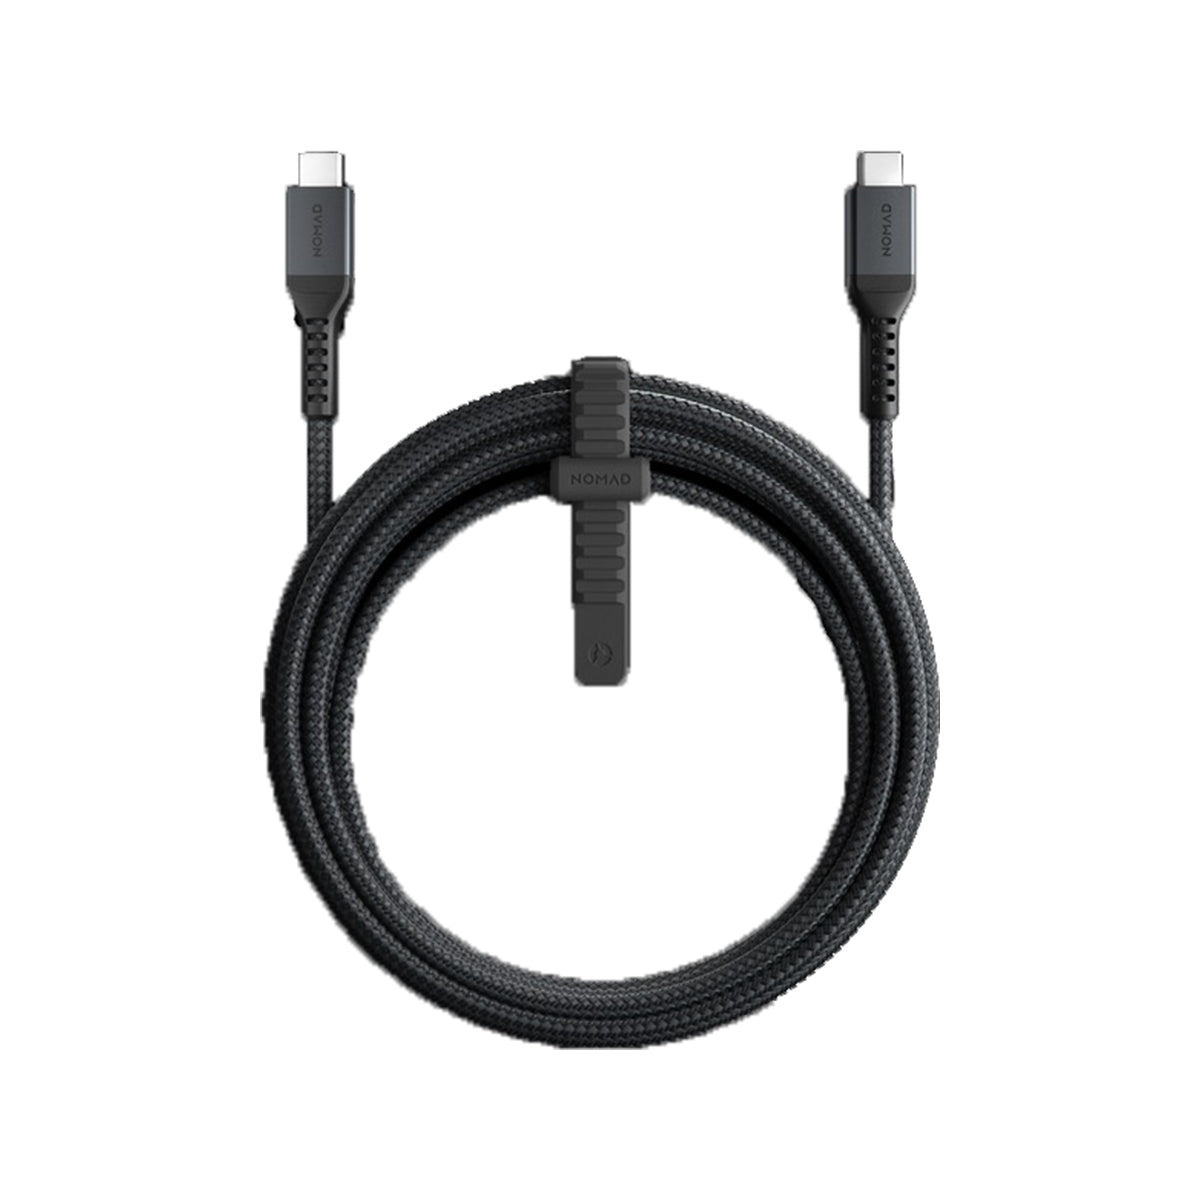 NOMAD Kevlar USB C Cable V2 - 3.0M for MacBook Pro